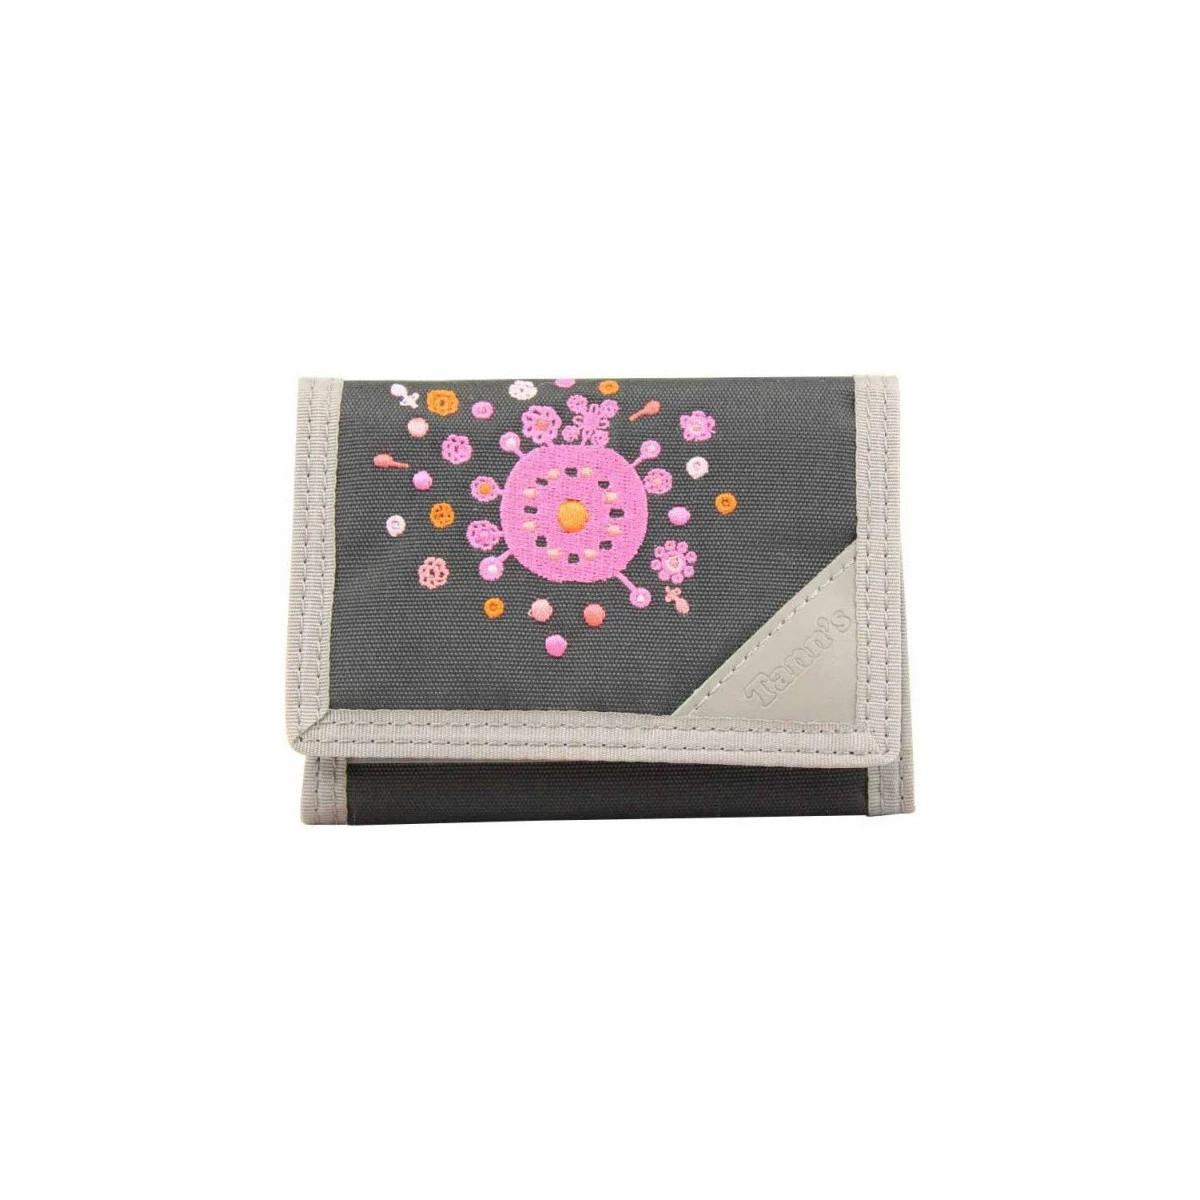 Tann´s Multicolore Petit portefeuille en toile / Gris déco brodée fleurs Ngrwjquj